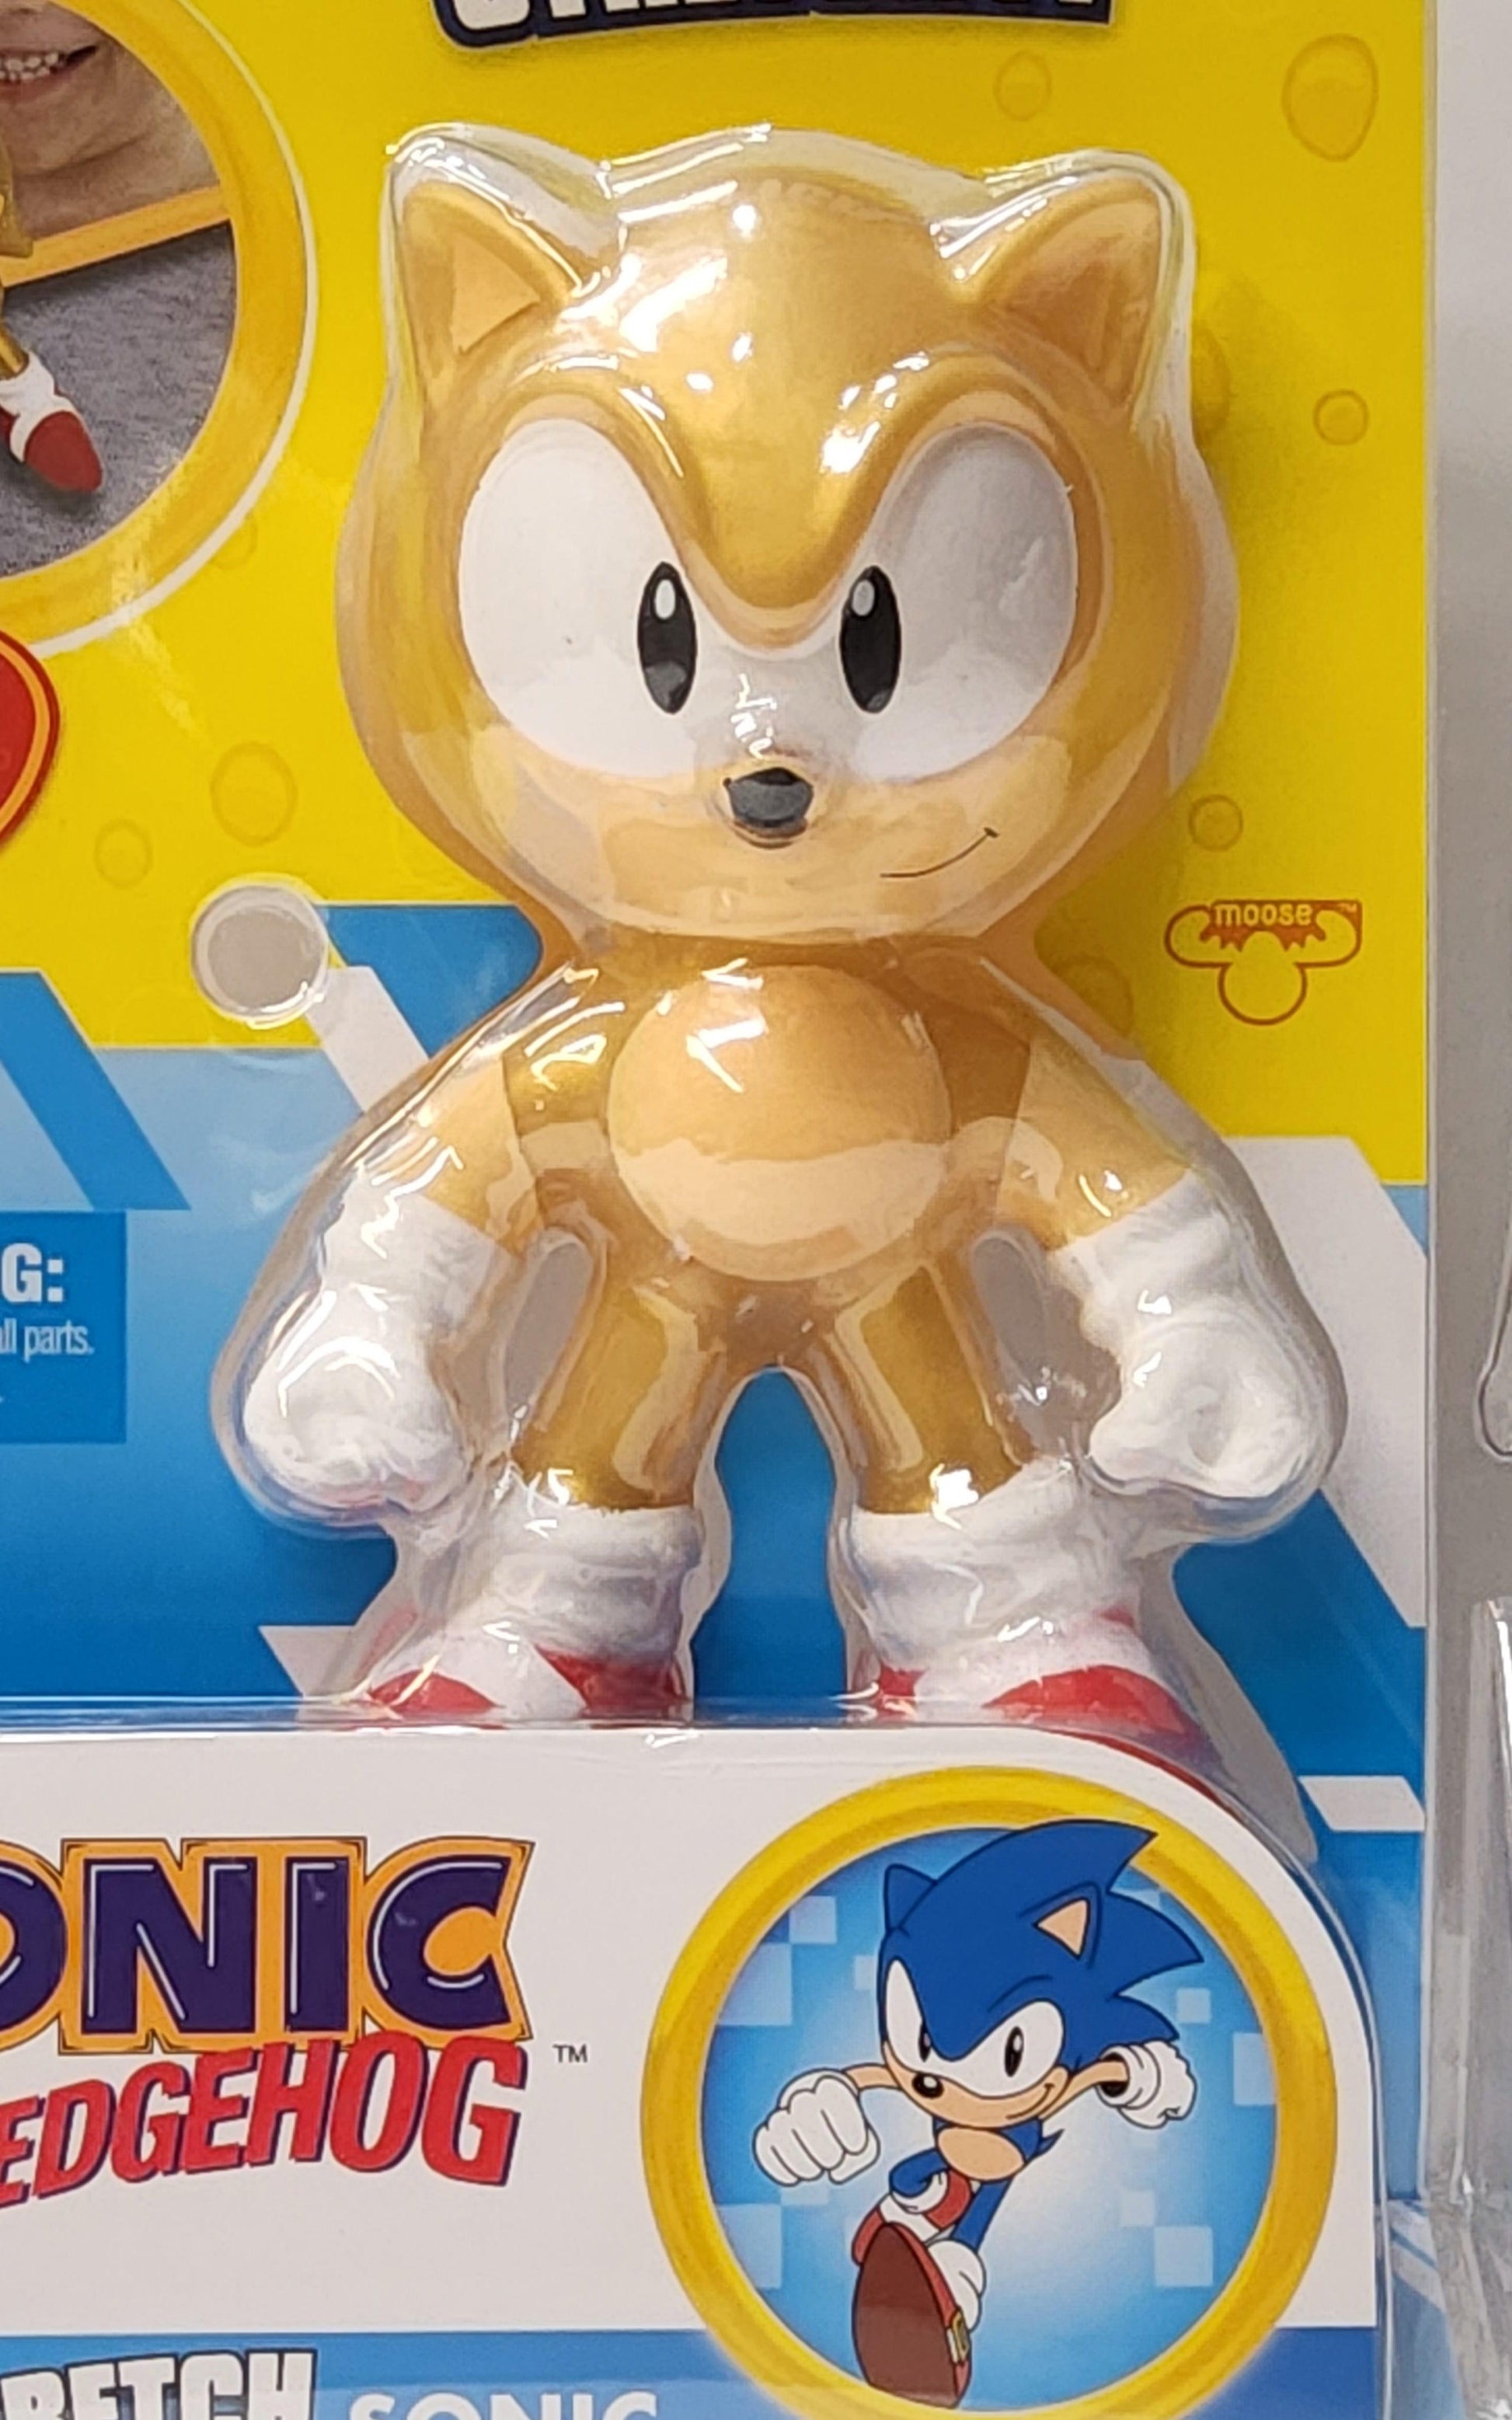 2022 Heroes of Goo Jit Zu Classic Gold Sonic The Hedgehog Figure